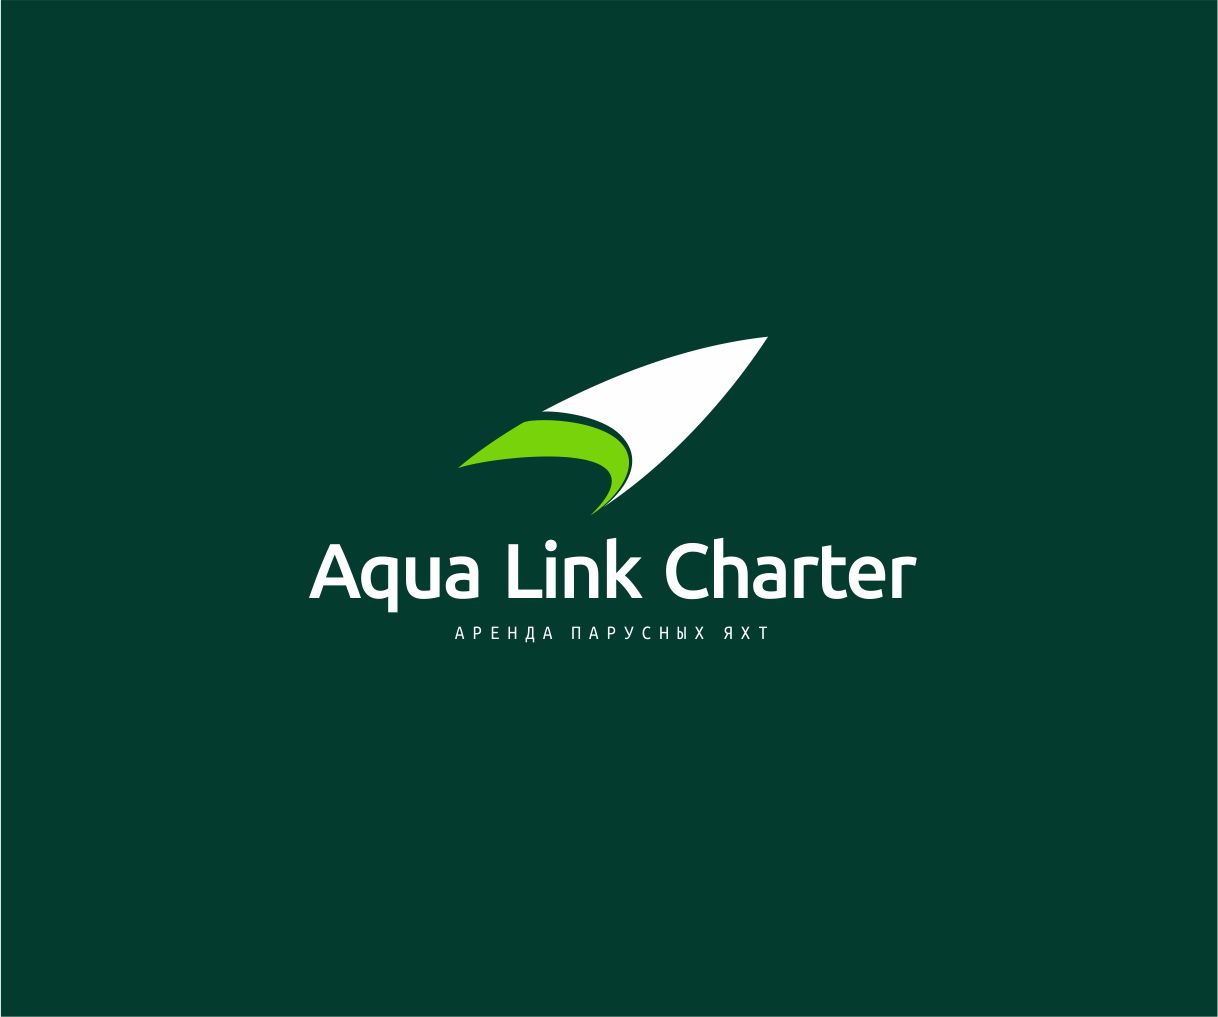 Аренда (чартер) парусных яхт - Aqua Link Charter - дизайнер GAMAIUN